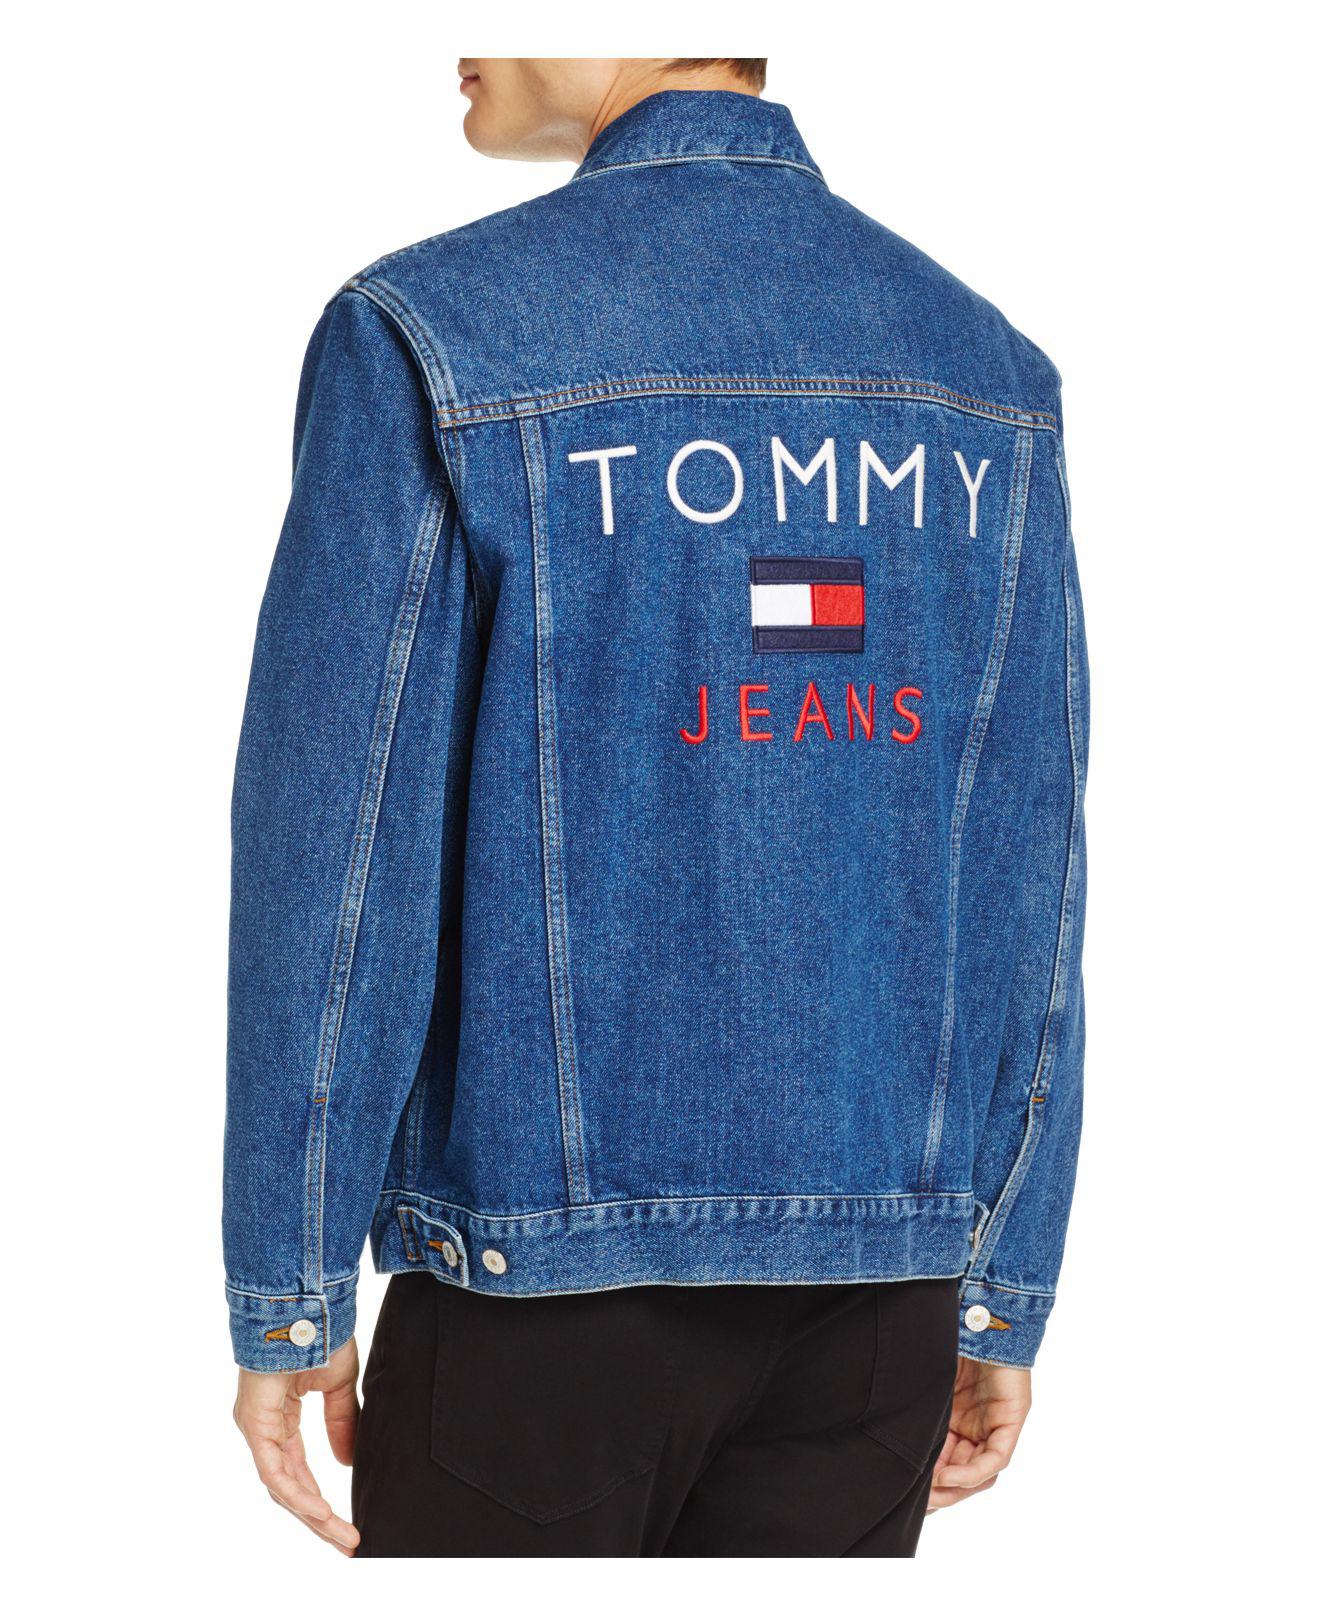 Modernisering slagader verbanning Tommy Hilfiger Tommy Jeans 90's Denim Jacket in Blue | Lyst